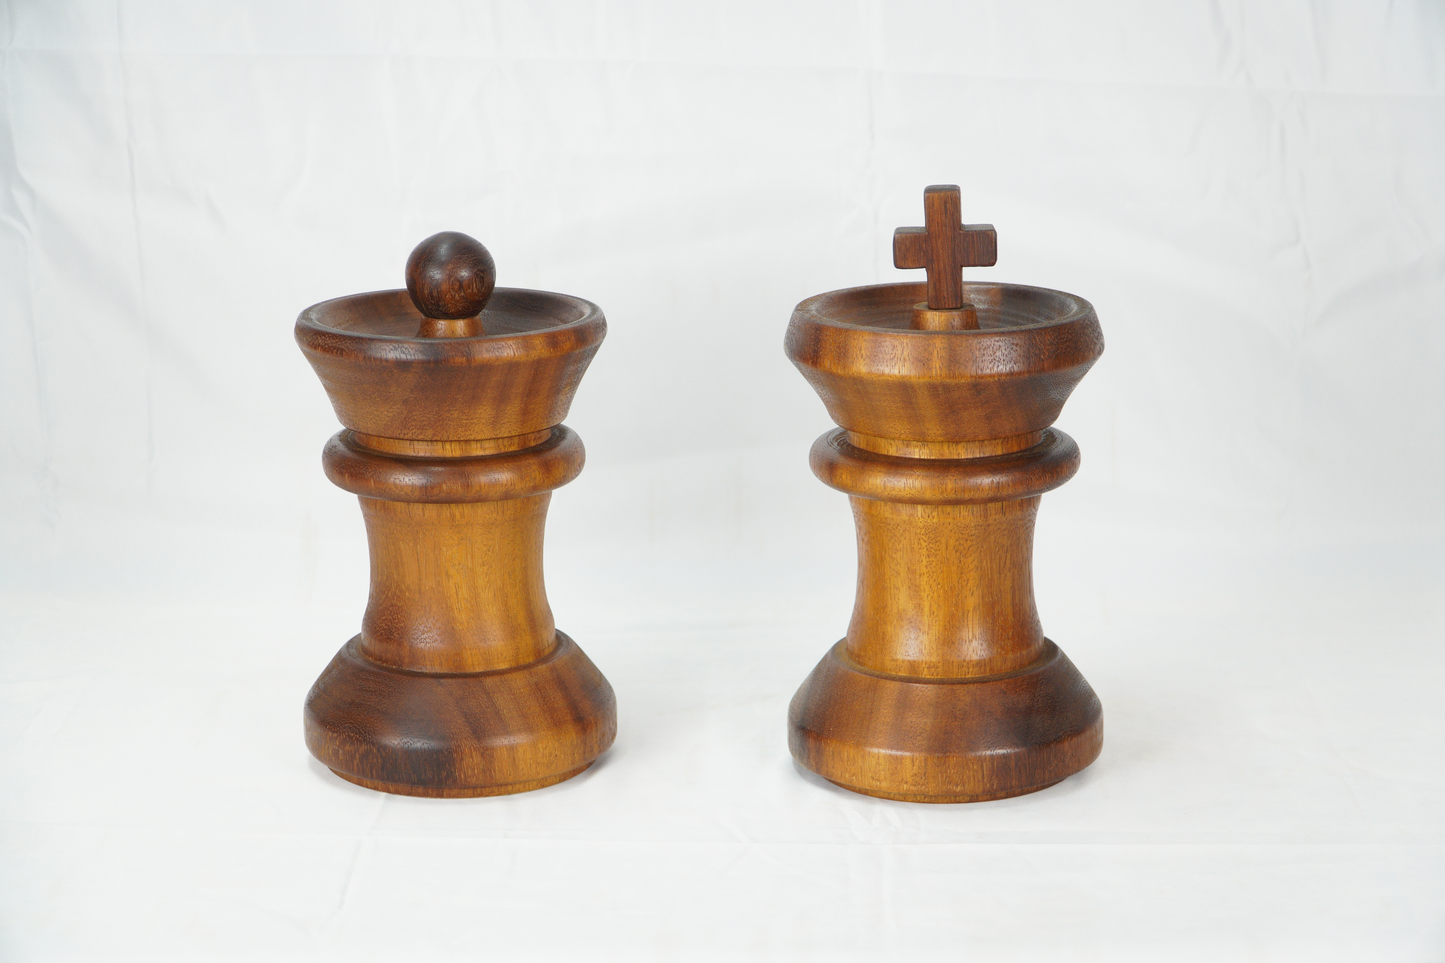 Figura decorativa de madera Rey ajedrez